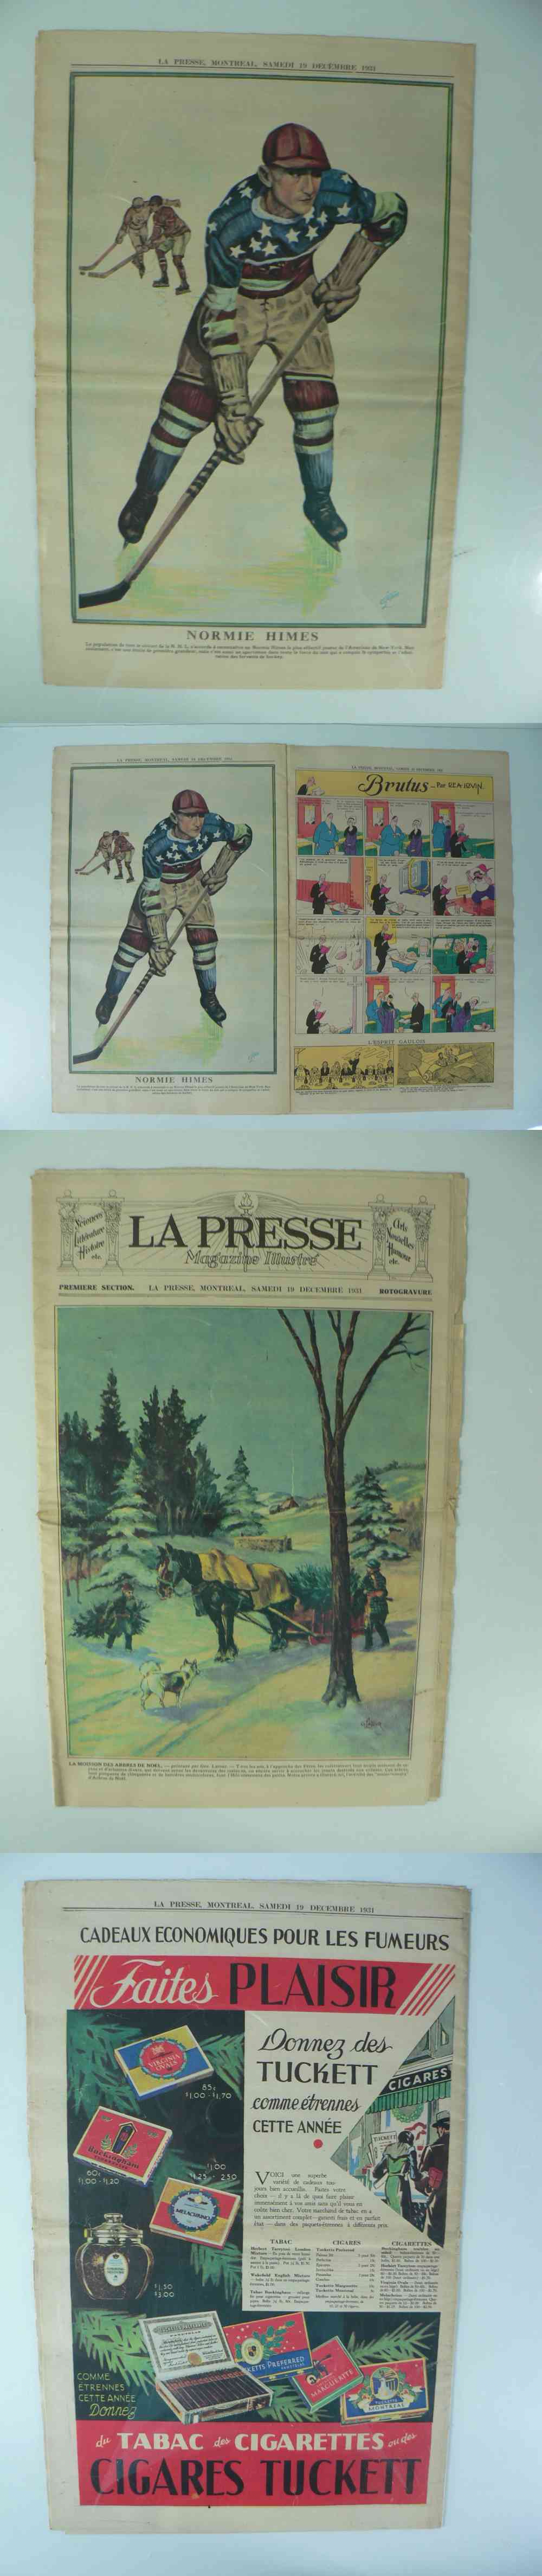 1931 LA PRESSE FULL NEWSPAPER INSIDE PHOTO N. HIMES photo